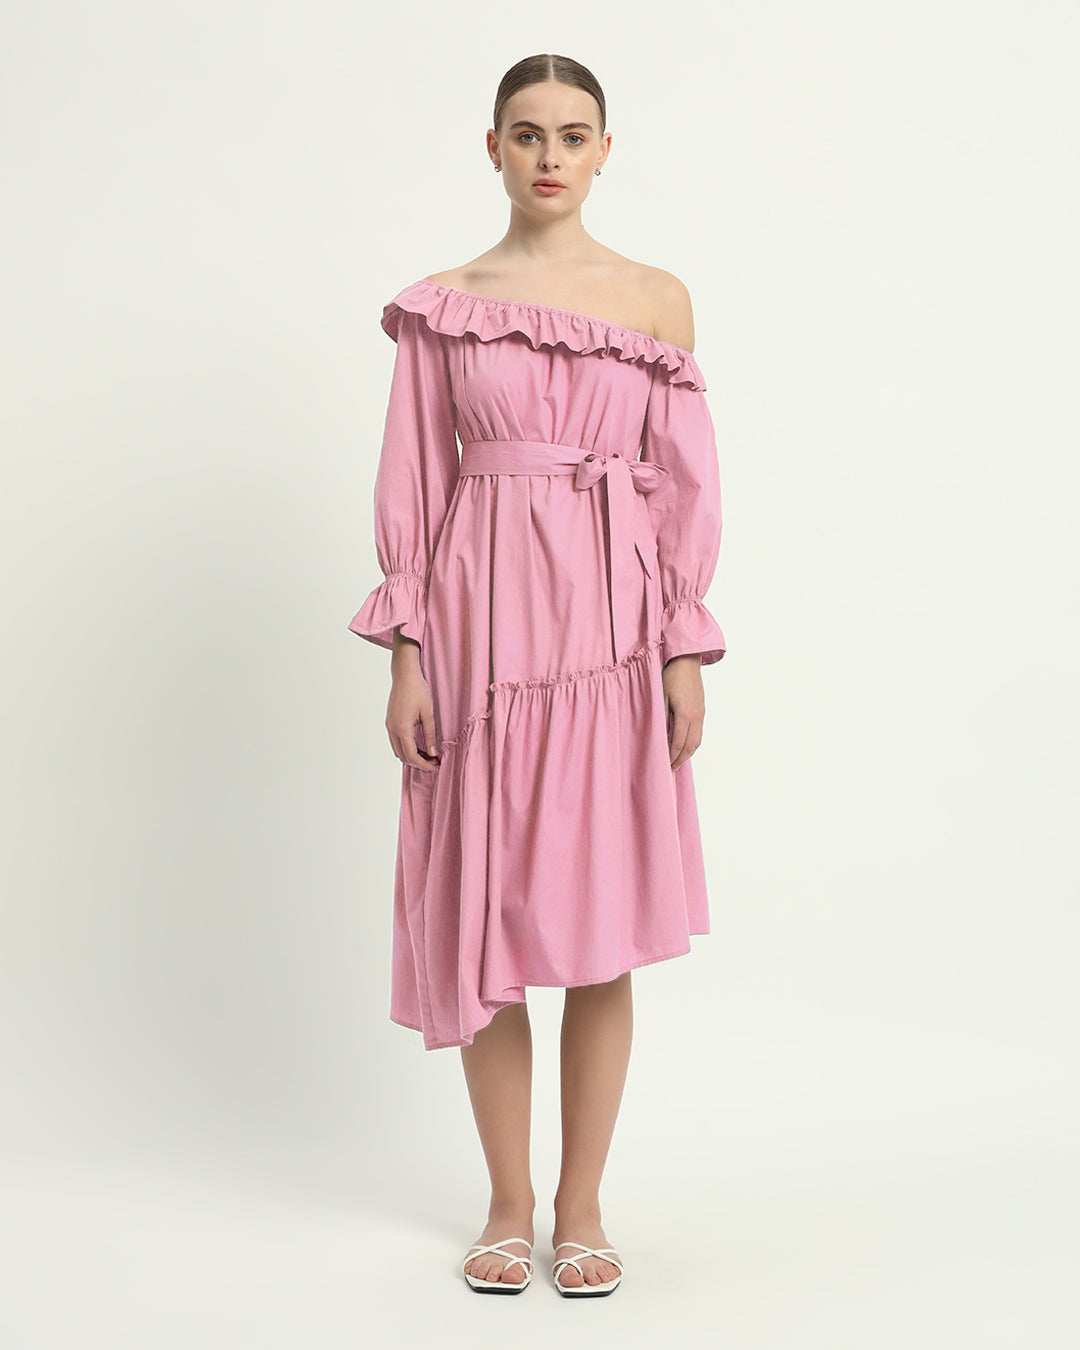 The Stellata Fondant Pink Cotton Dress